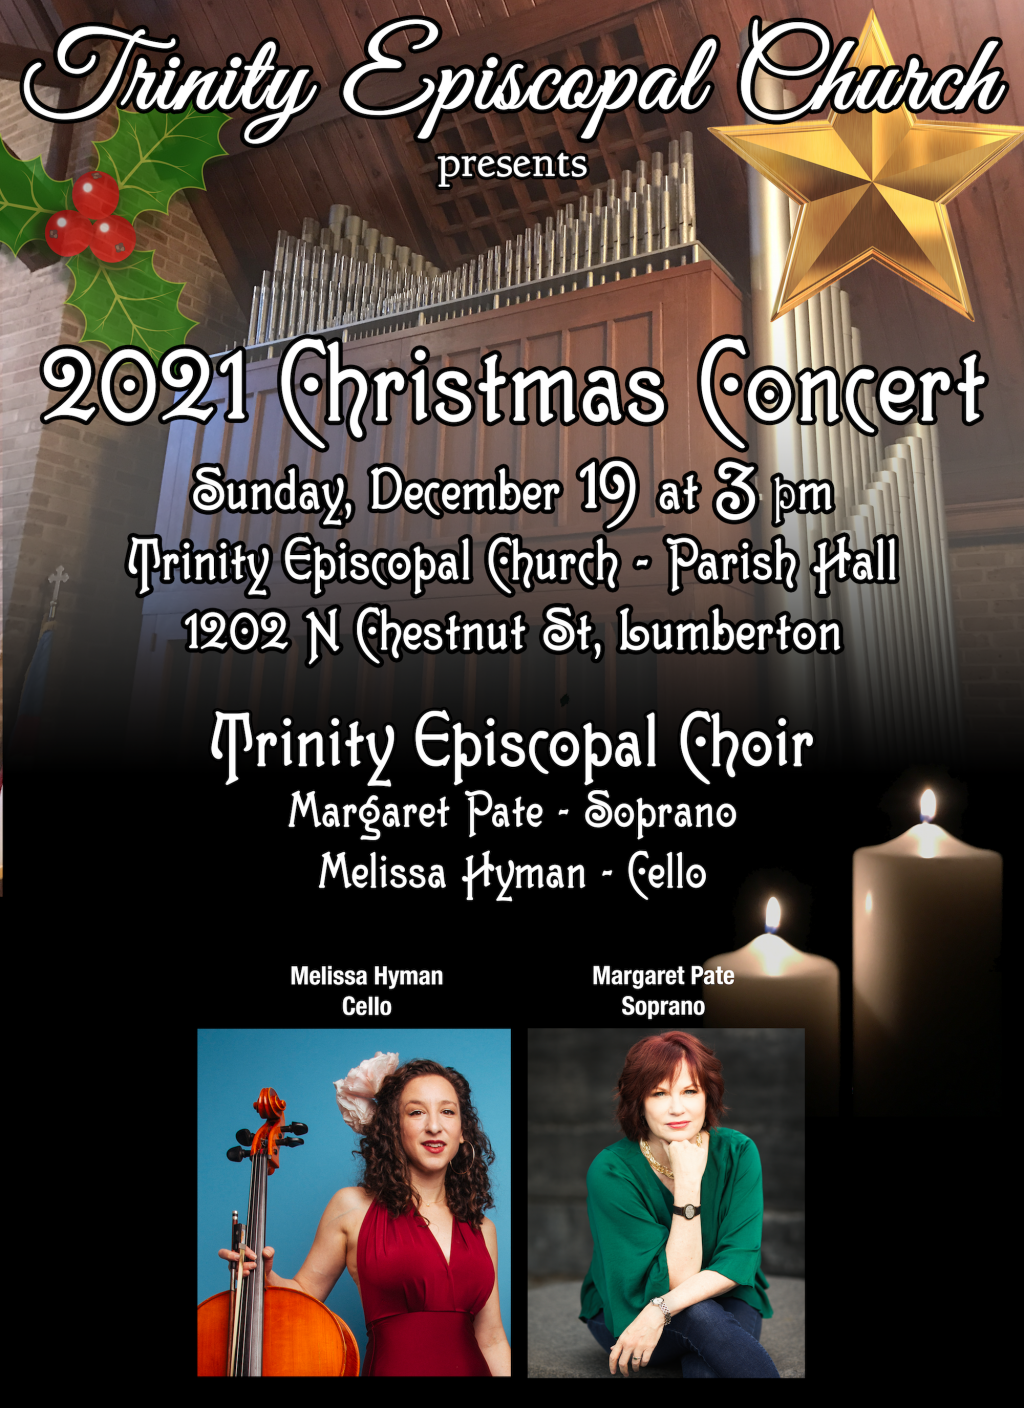 image-945385-Christmas_Concert_2021_copy-d3d94.w640.png